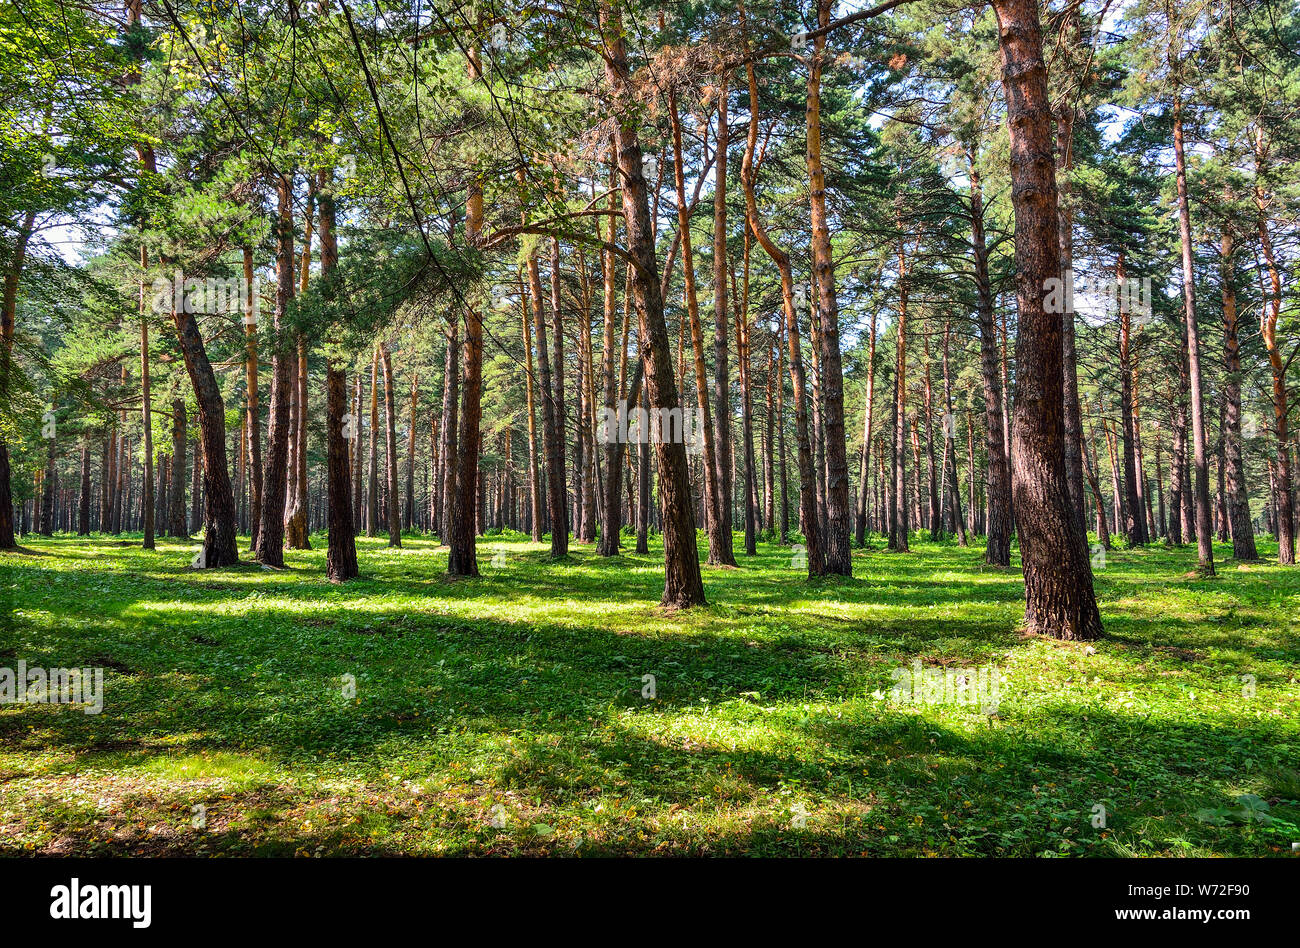 Pinienwald - schöne Sommer sonnige Landschaft. Hoch gerade Pinien Trunks, flauschige grüne Gras Teppich, frische, saubere, gesunde Luft. Frische und Stockfoto